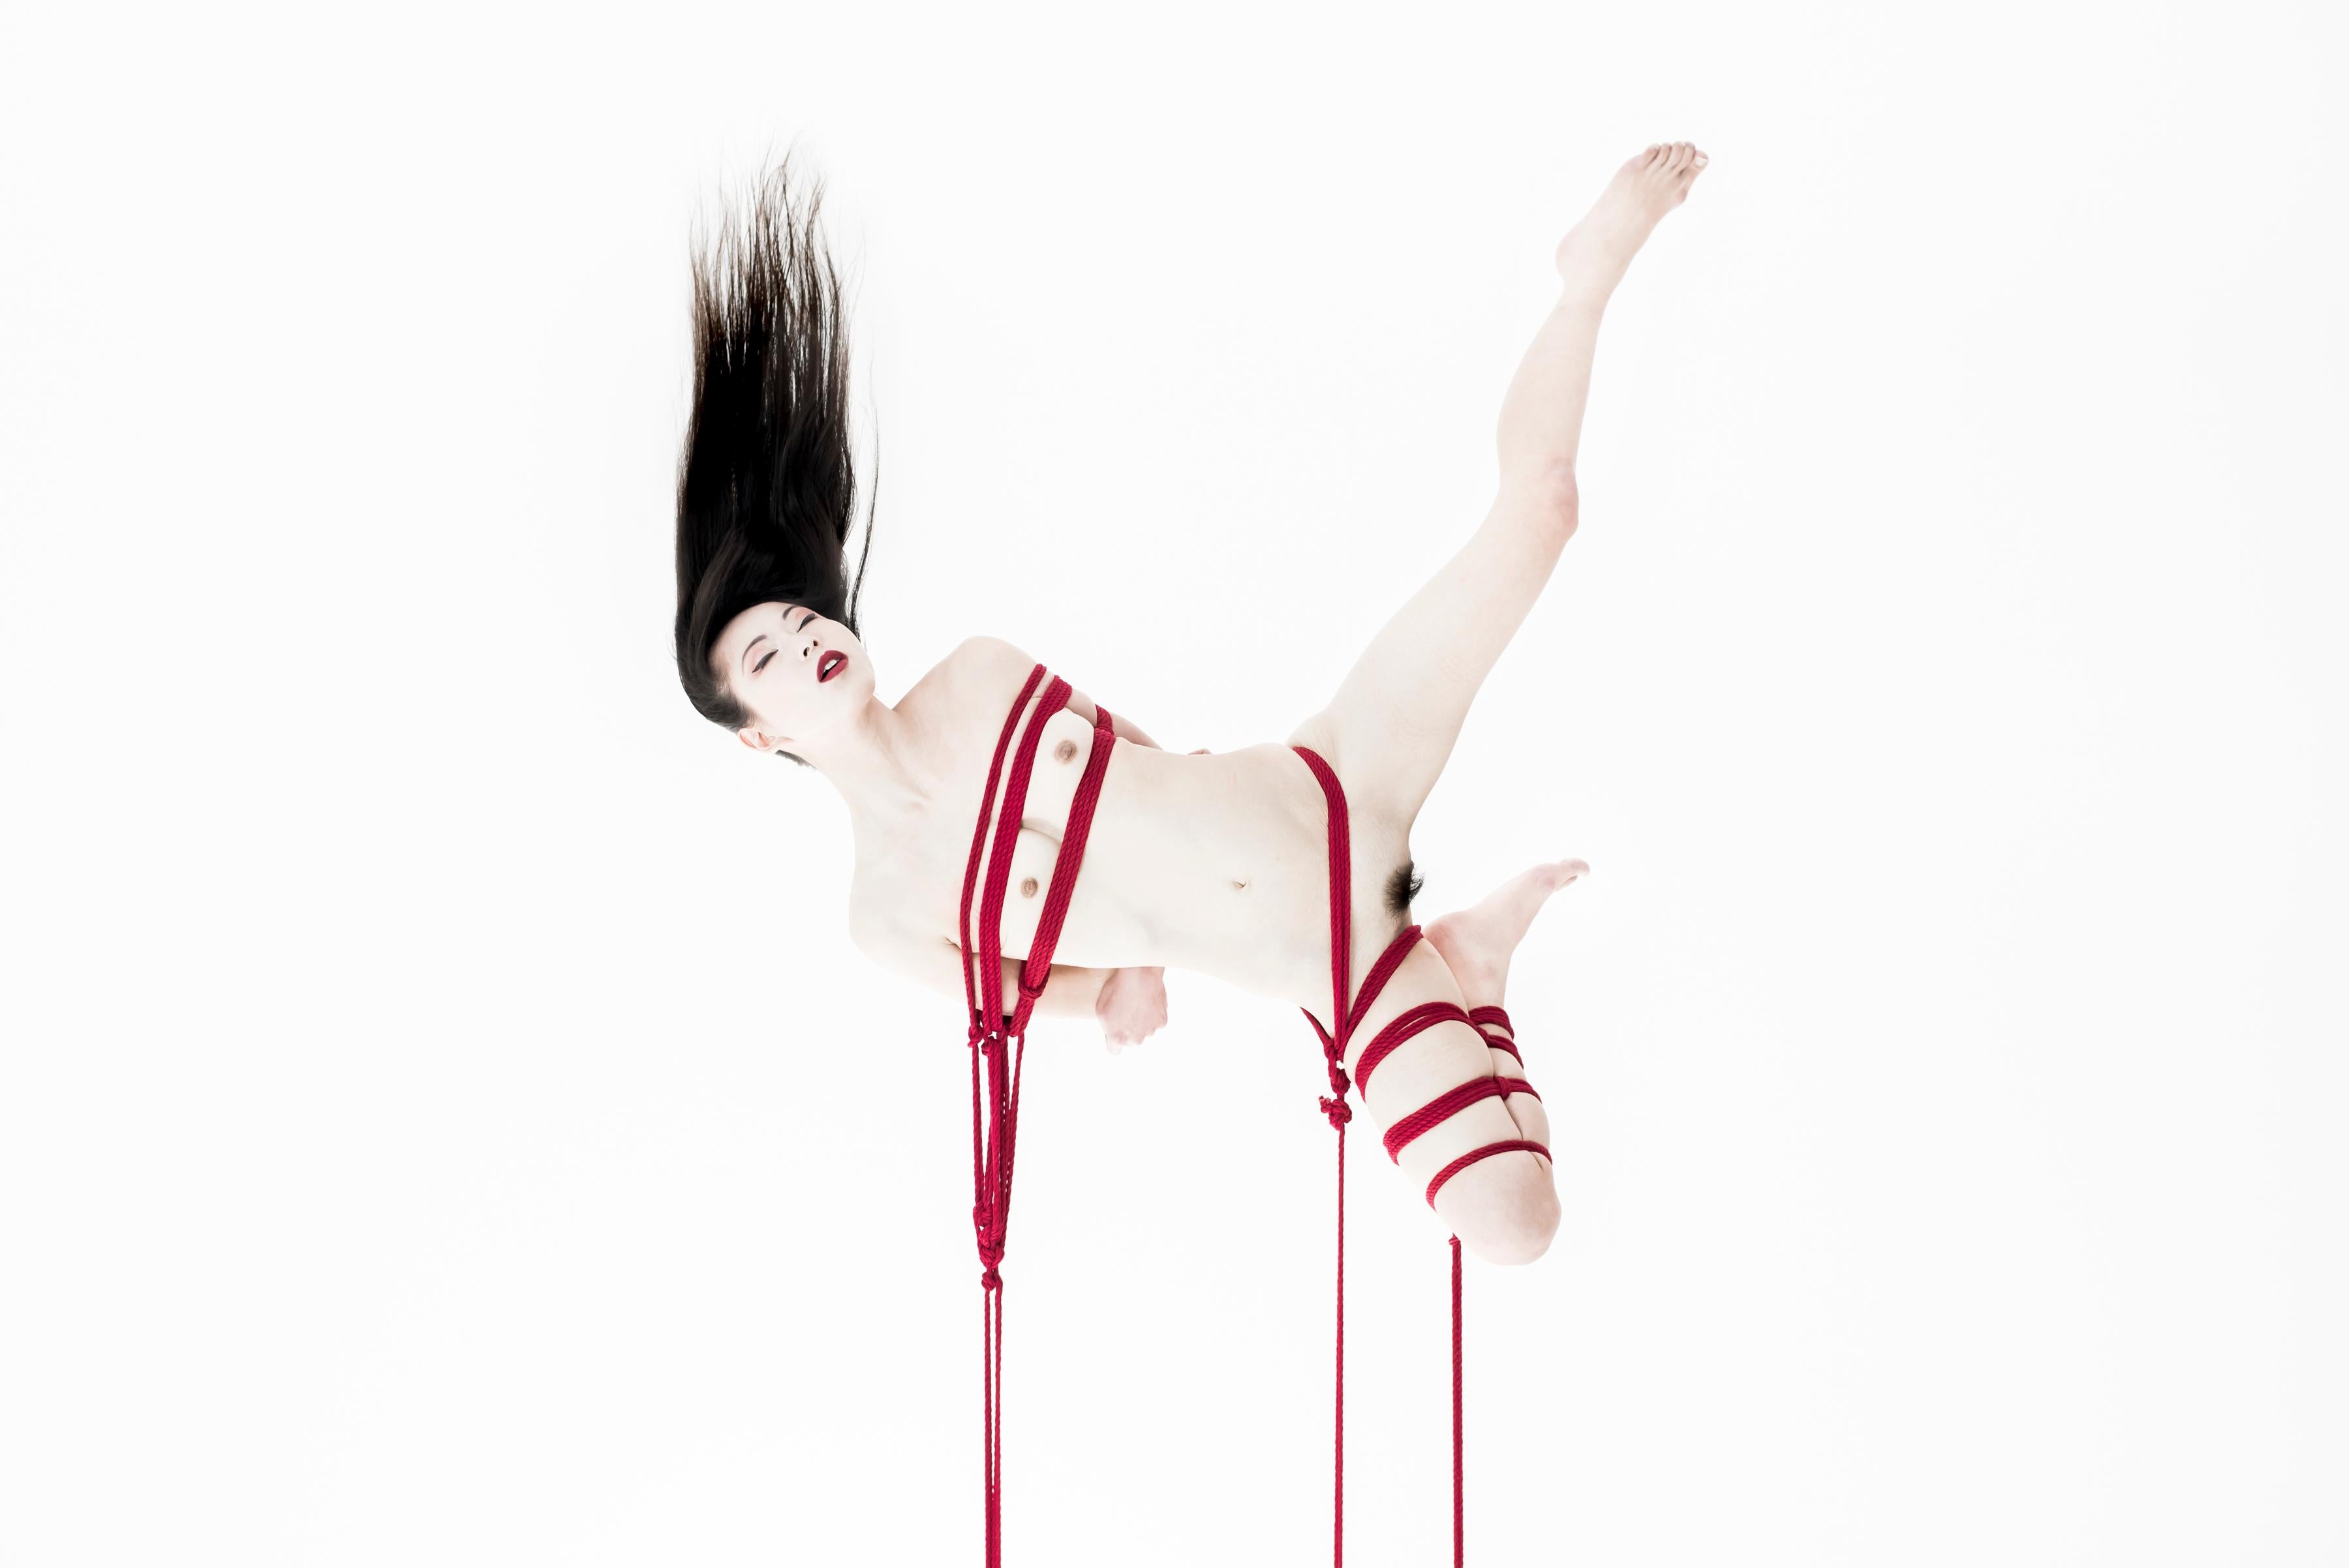 Figurative Photograph Christian Houge -  'Shibari 2', Tokyo  de la série « Okurimono » Japon, studio de cordes nues 